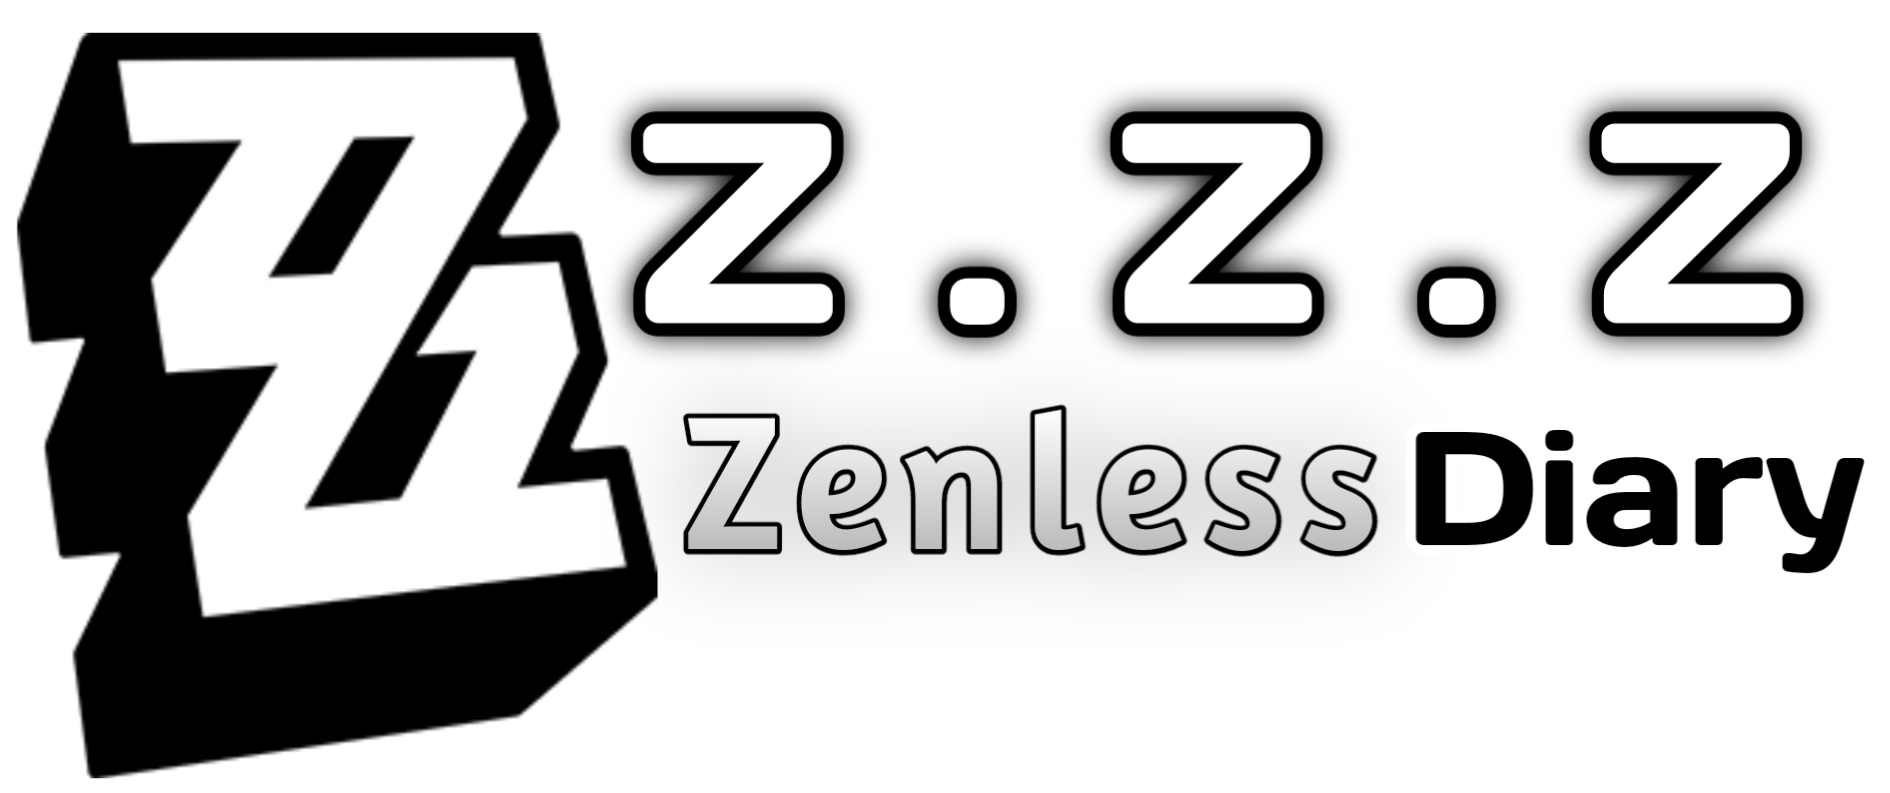 Zenless Zone Zero Wiki,